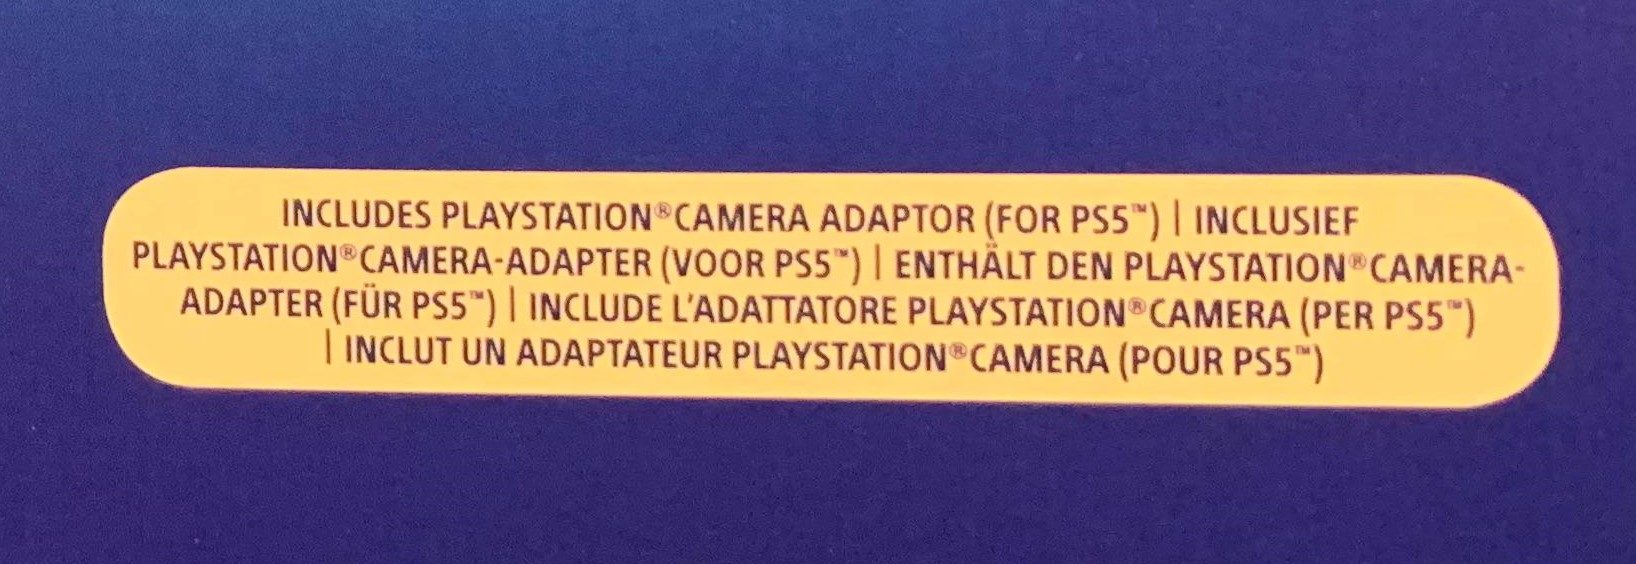 playstation camera adaptor